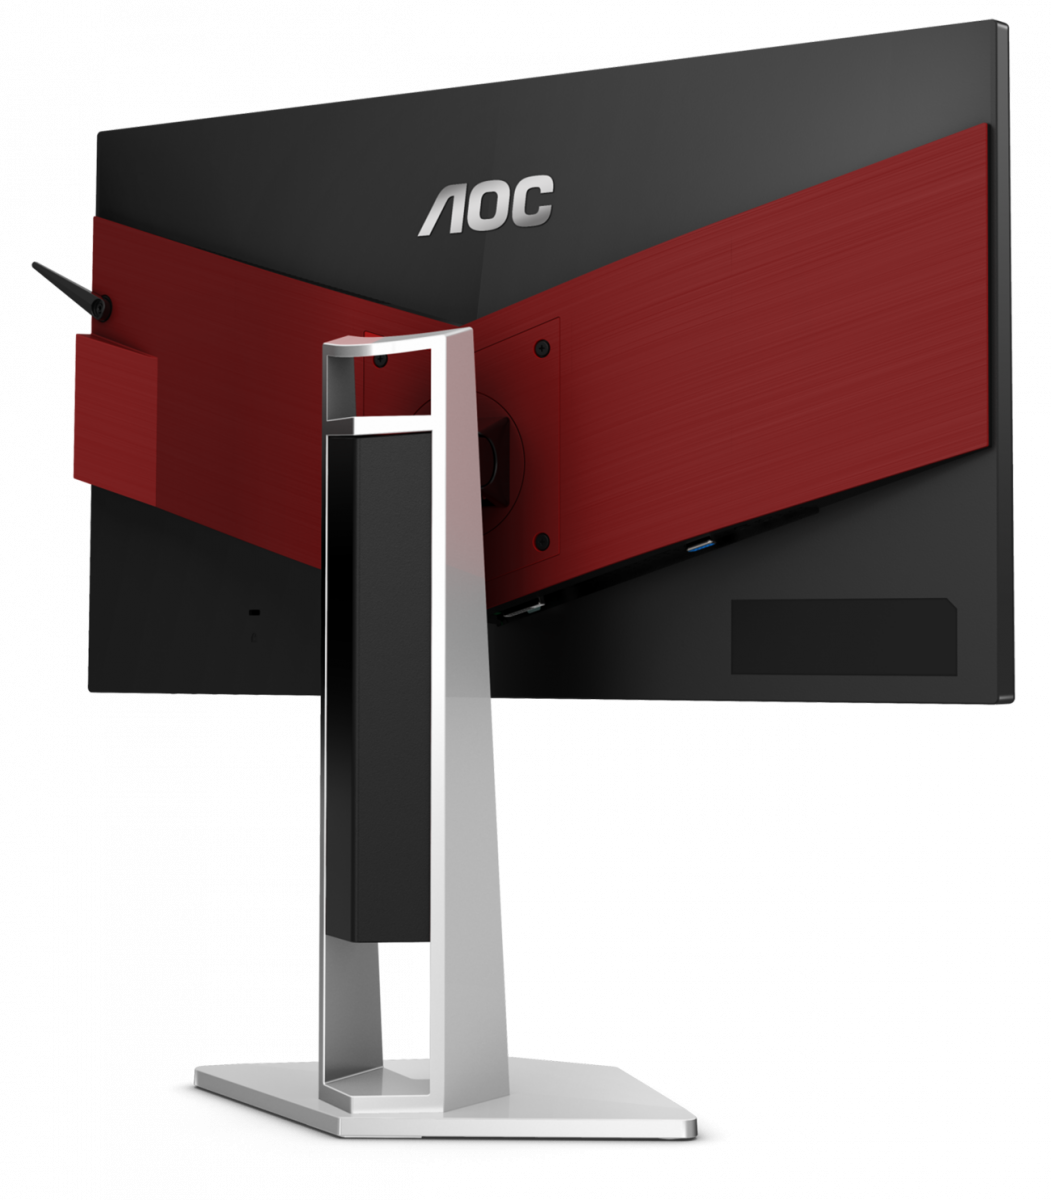 Игровой монитор AOC AGON AG251FZ2E в официальном интернет магазине AGONBYAOC.ru (AOC Россия)